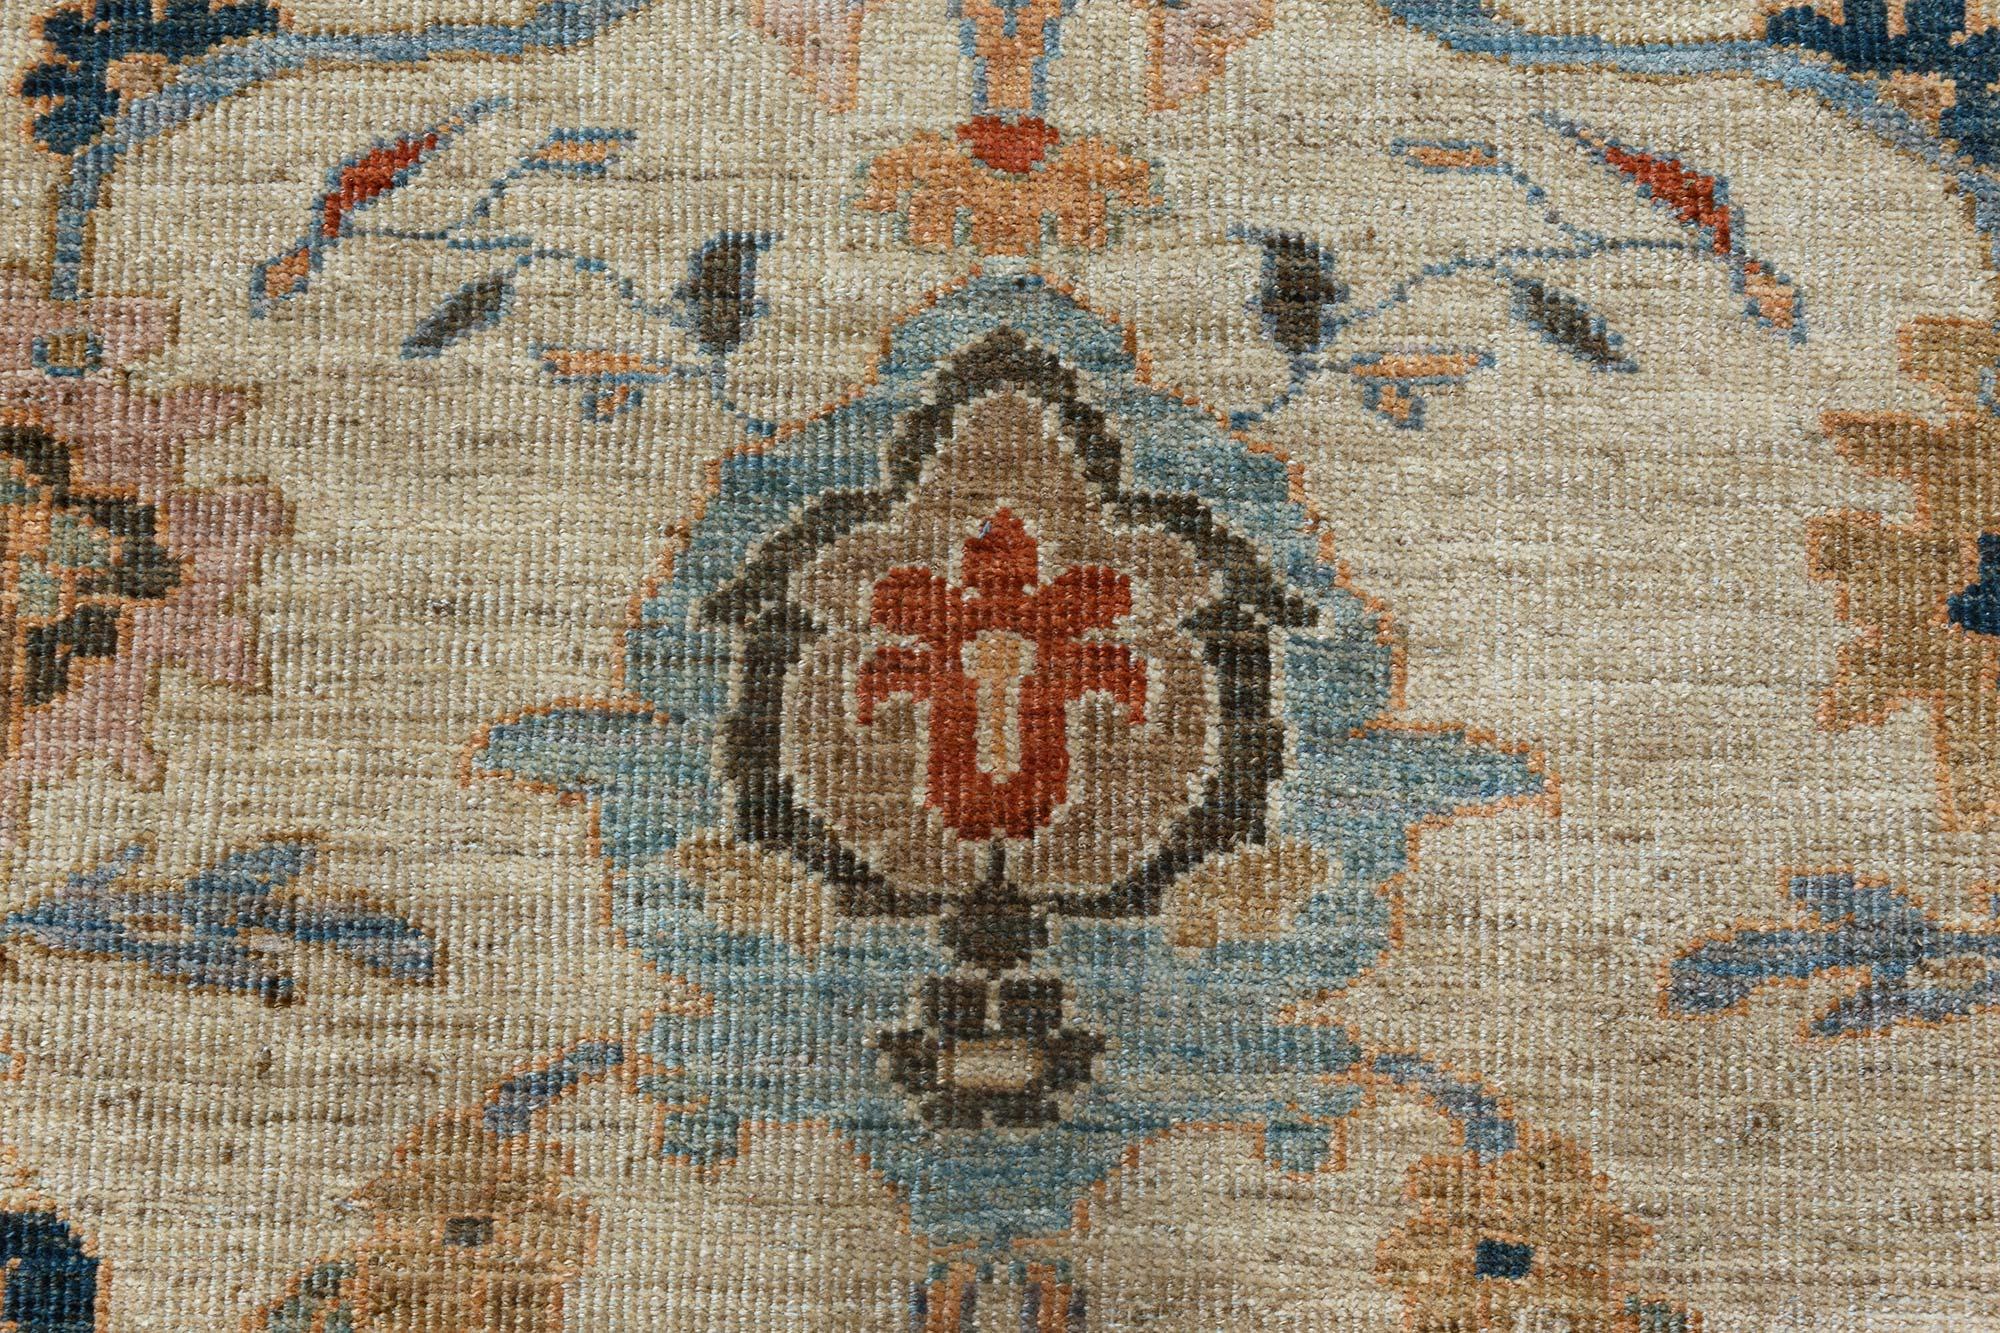 Tapis contemporain en laine fait main de style sultanabad par Doris Leslie Blau.
Taille : 8'10